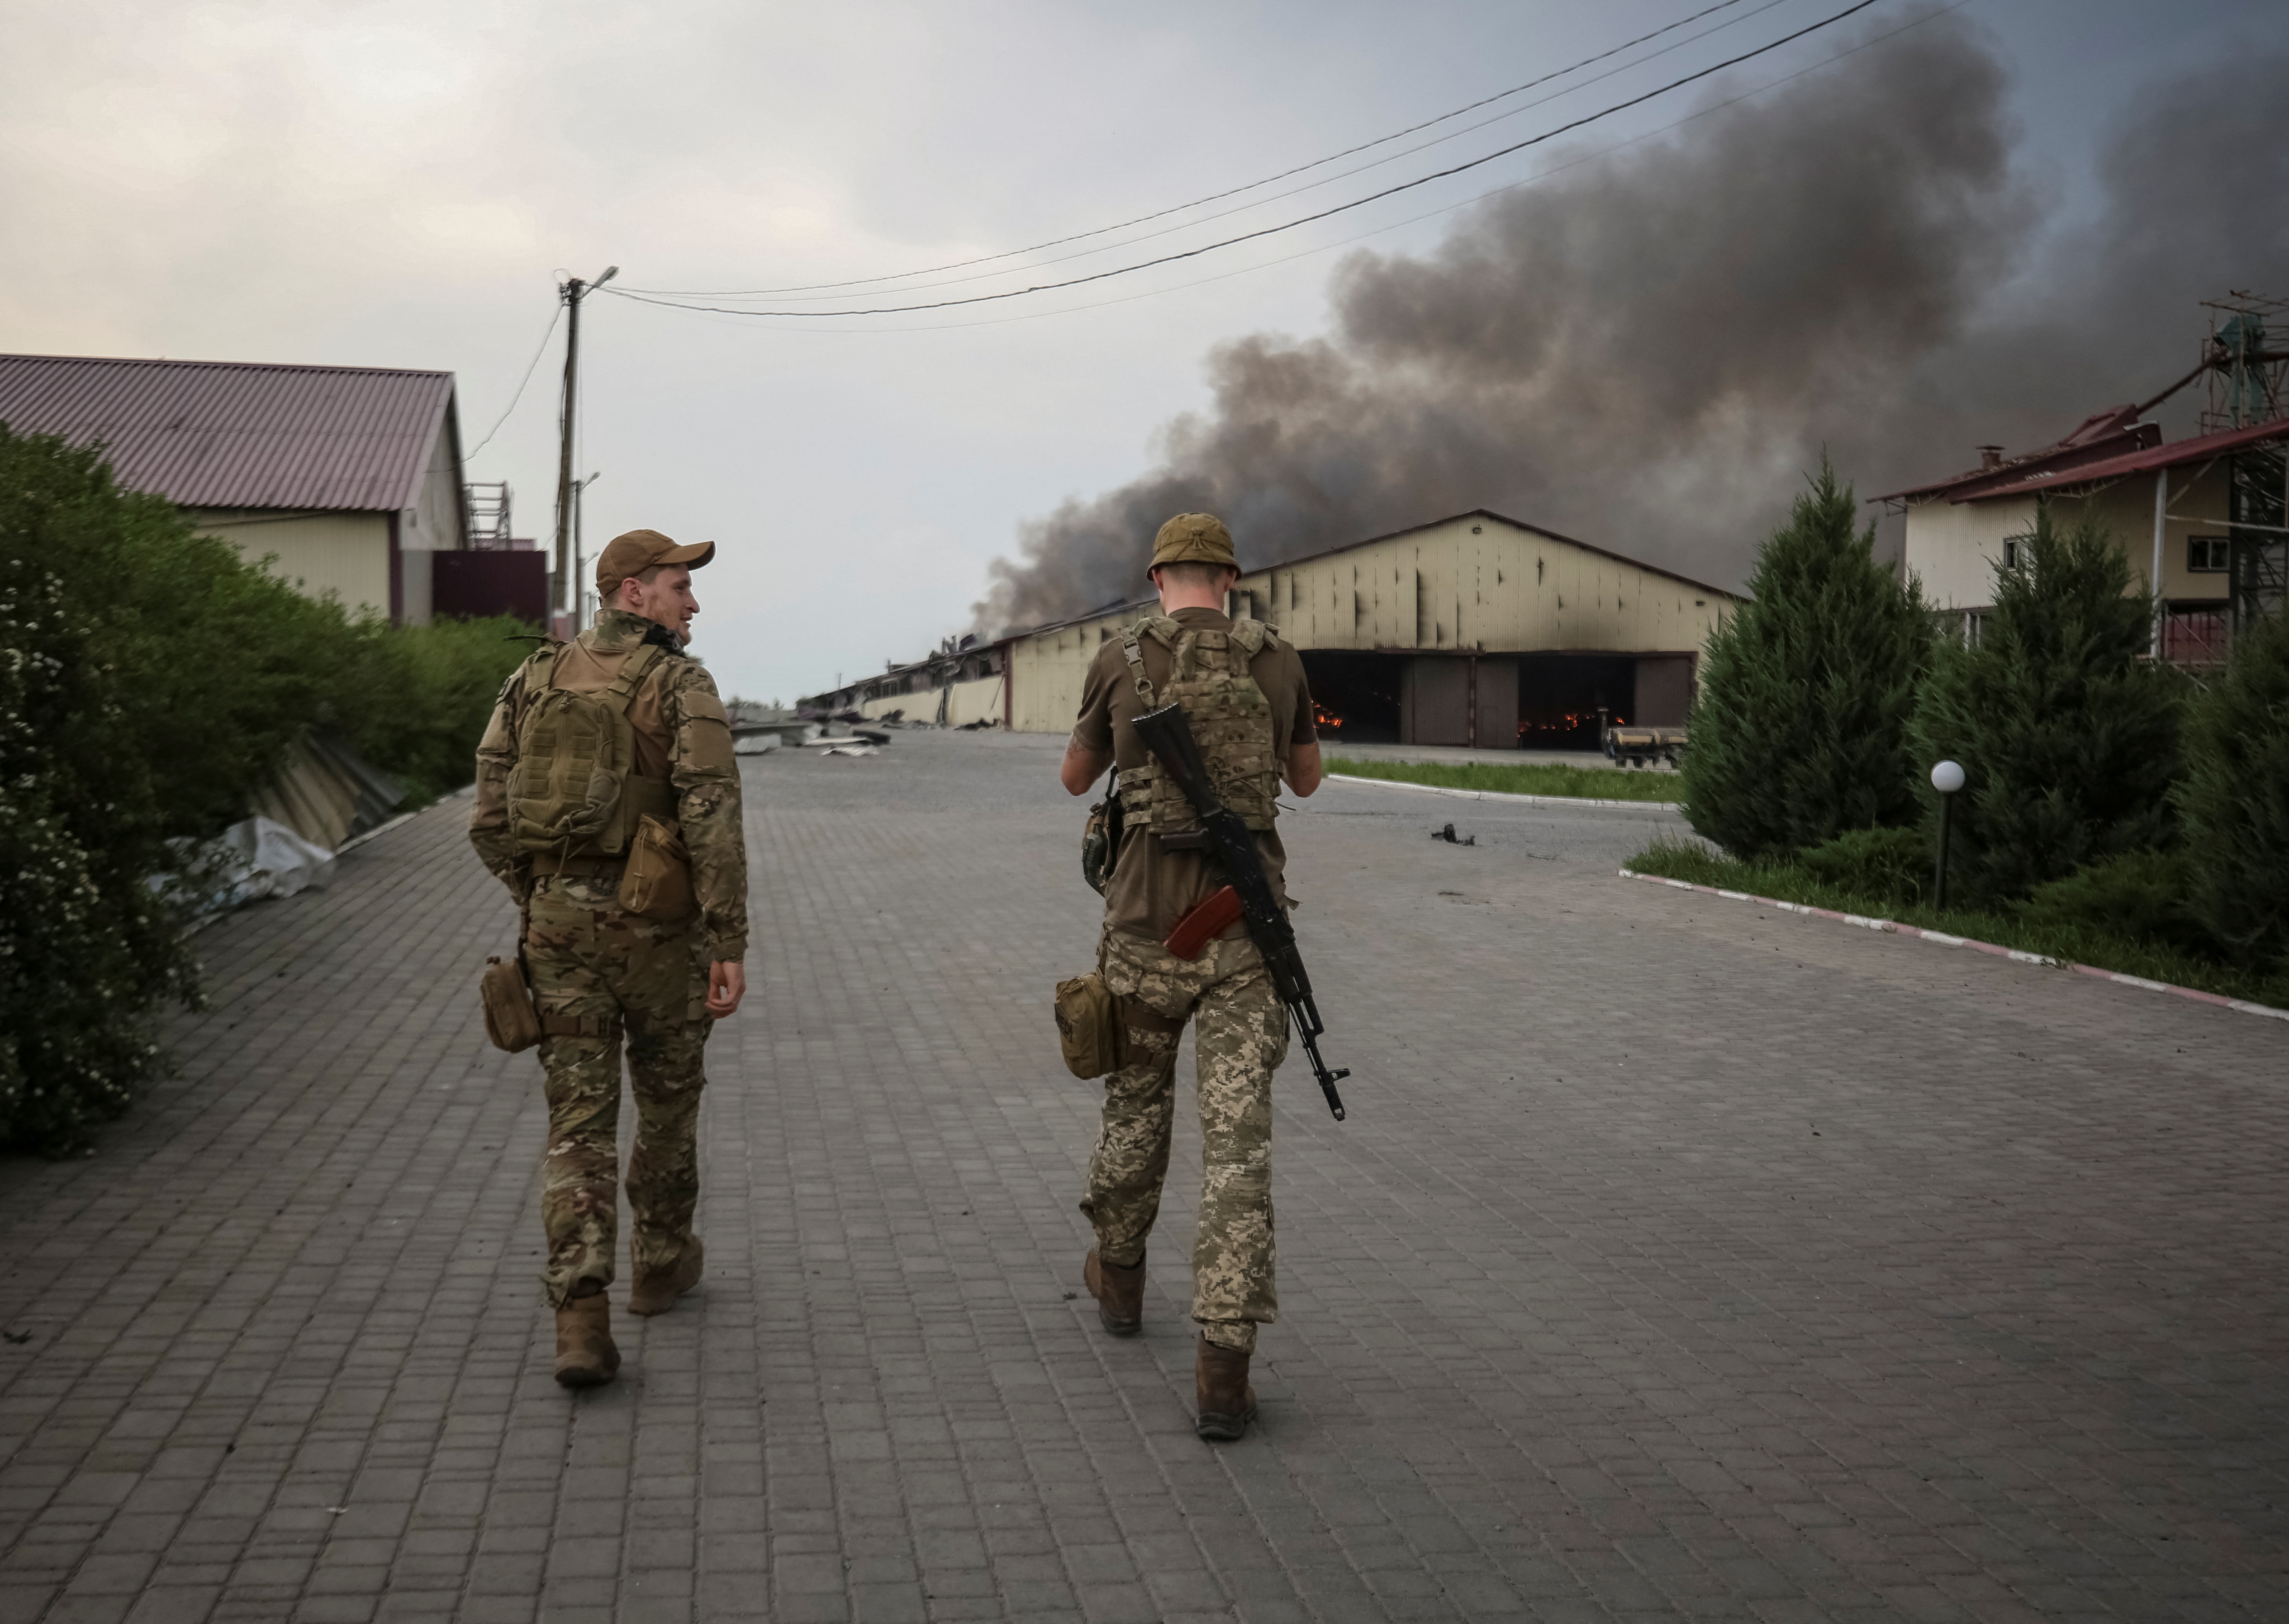 Continua l'attacco della Russia all'Ucraina, nella regione di Donetsk